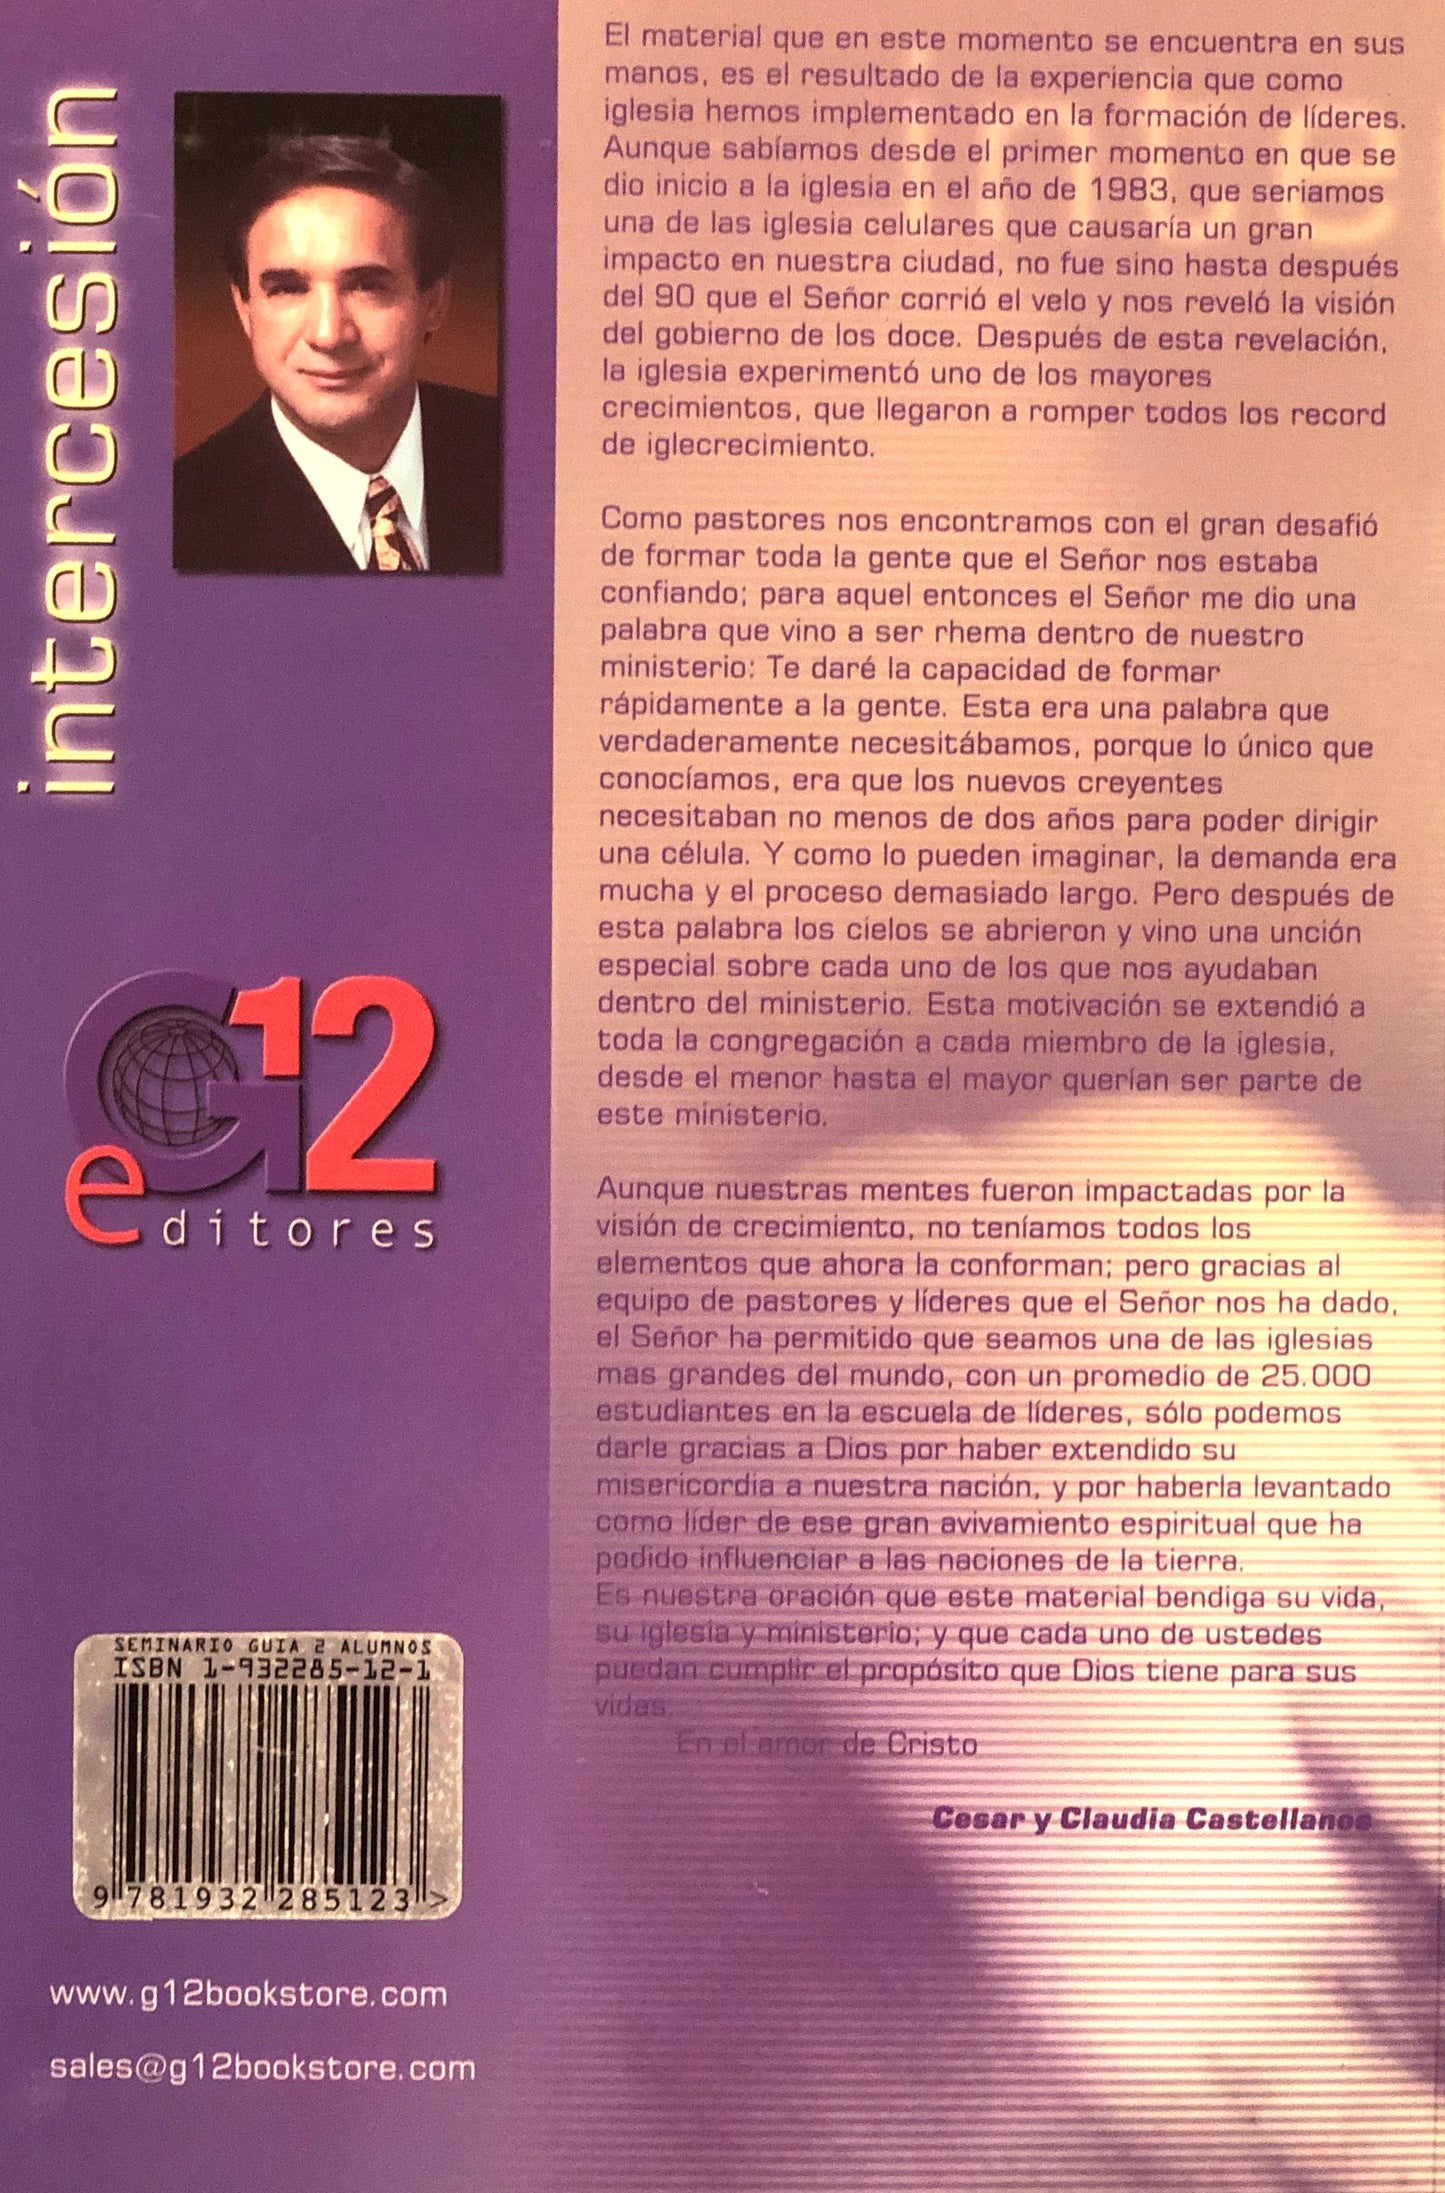 Intercesión - Seminario Nivel 2 - Guía del Alumno - Escuela de Líderes - Cesar Castellanos D.